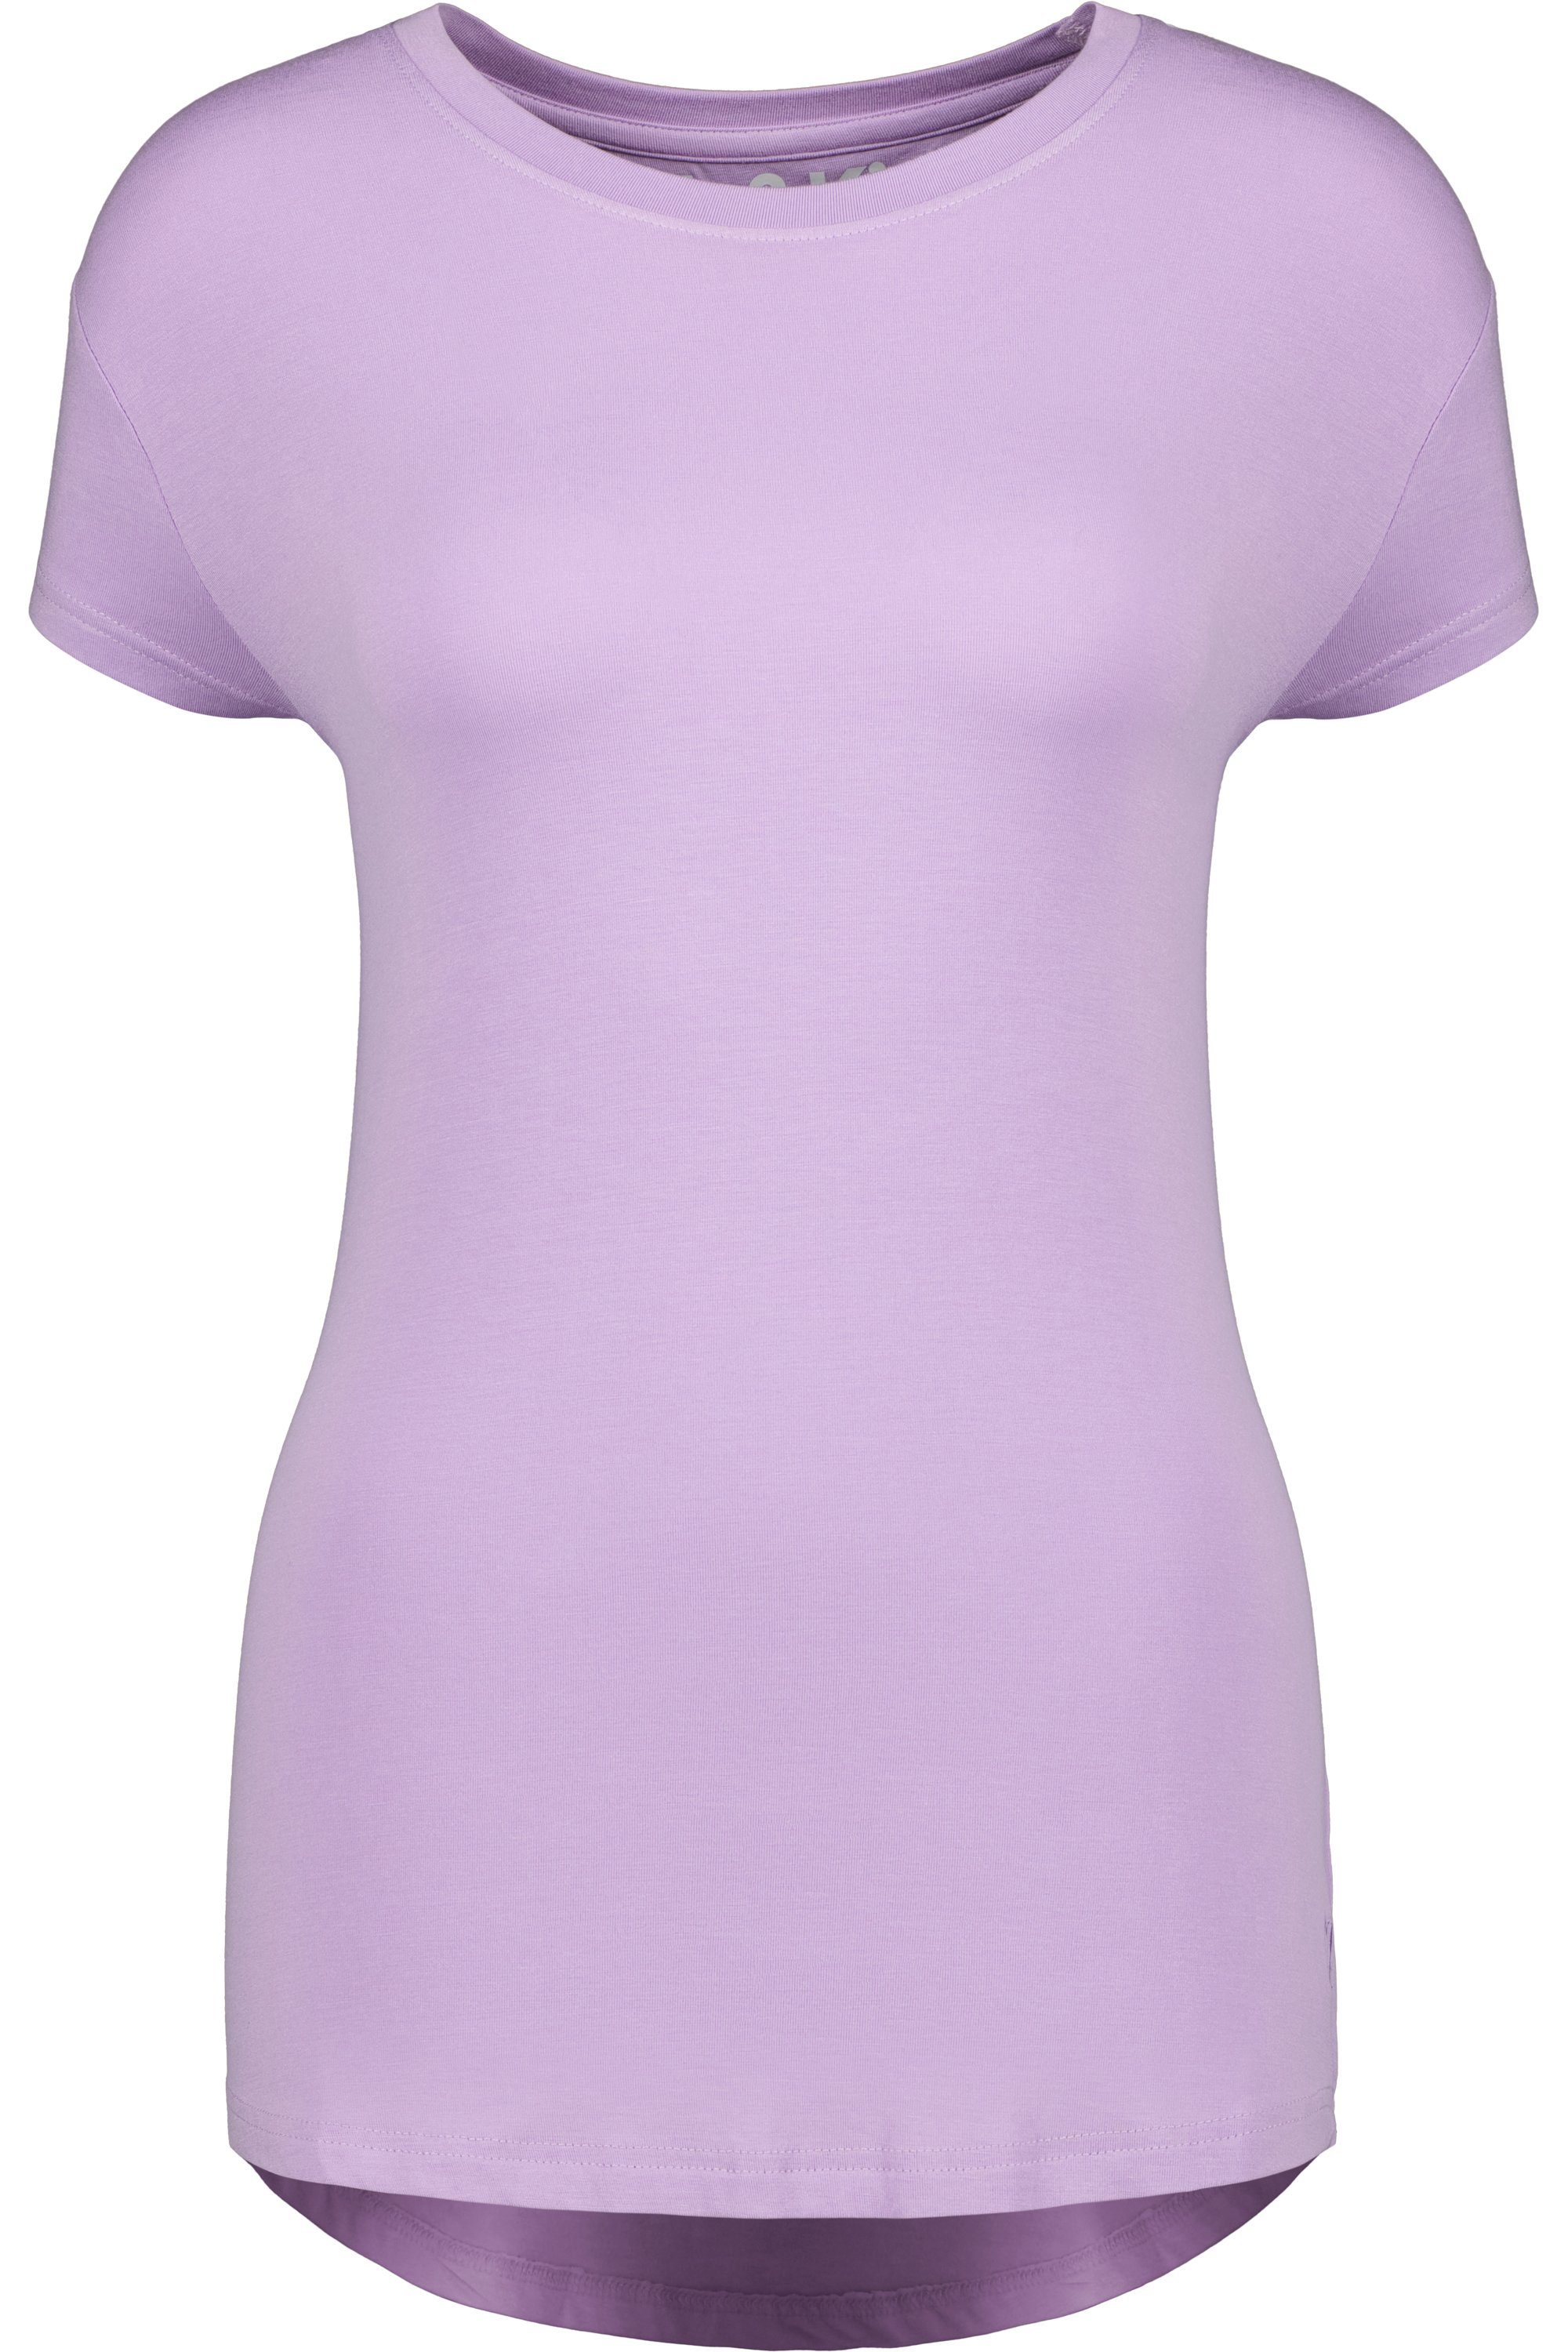 Kurzarmshirt, lavender Shirt A & MimmyAK Alife Damen Rundhalsshirt digital Shirt Kickin